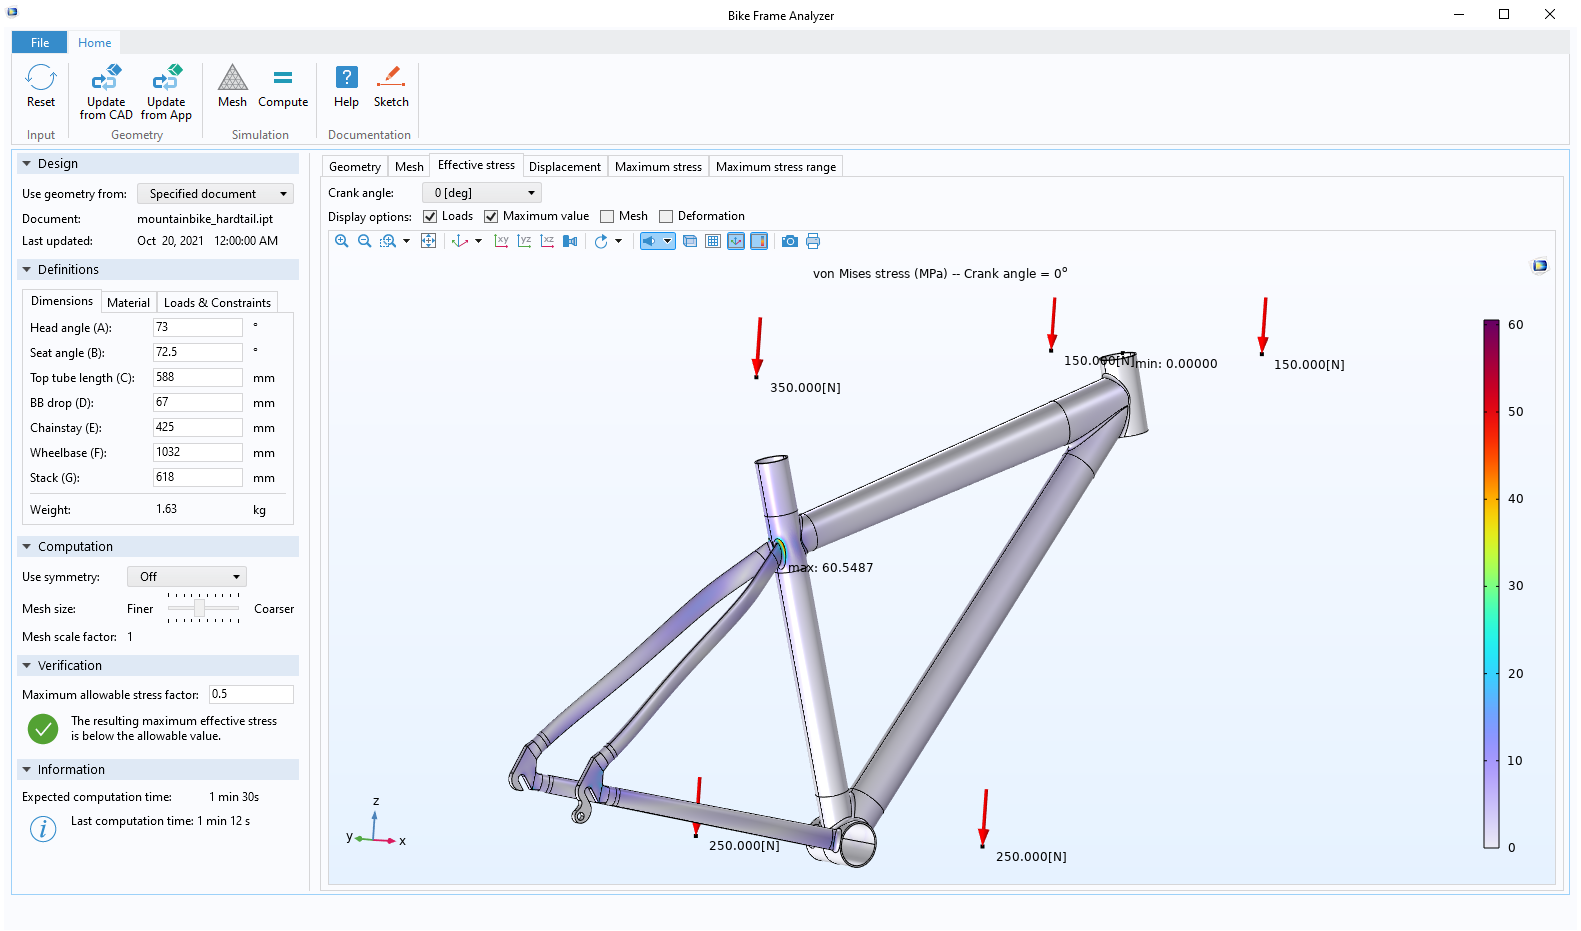 Интерфейс приложения Bike Frame Analyzer с полями для ввода данных в левой части и графическим окном справа.